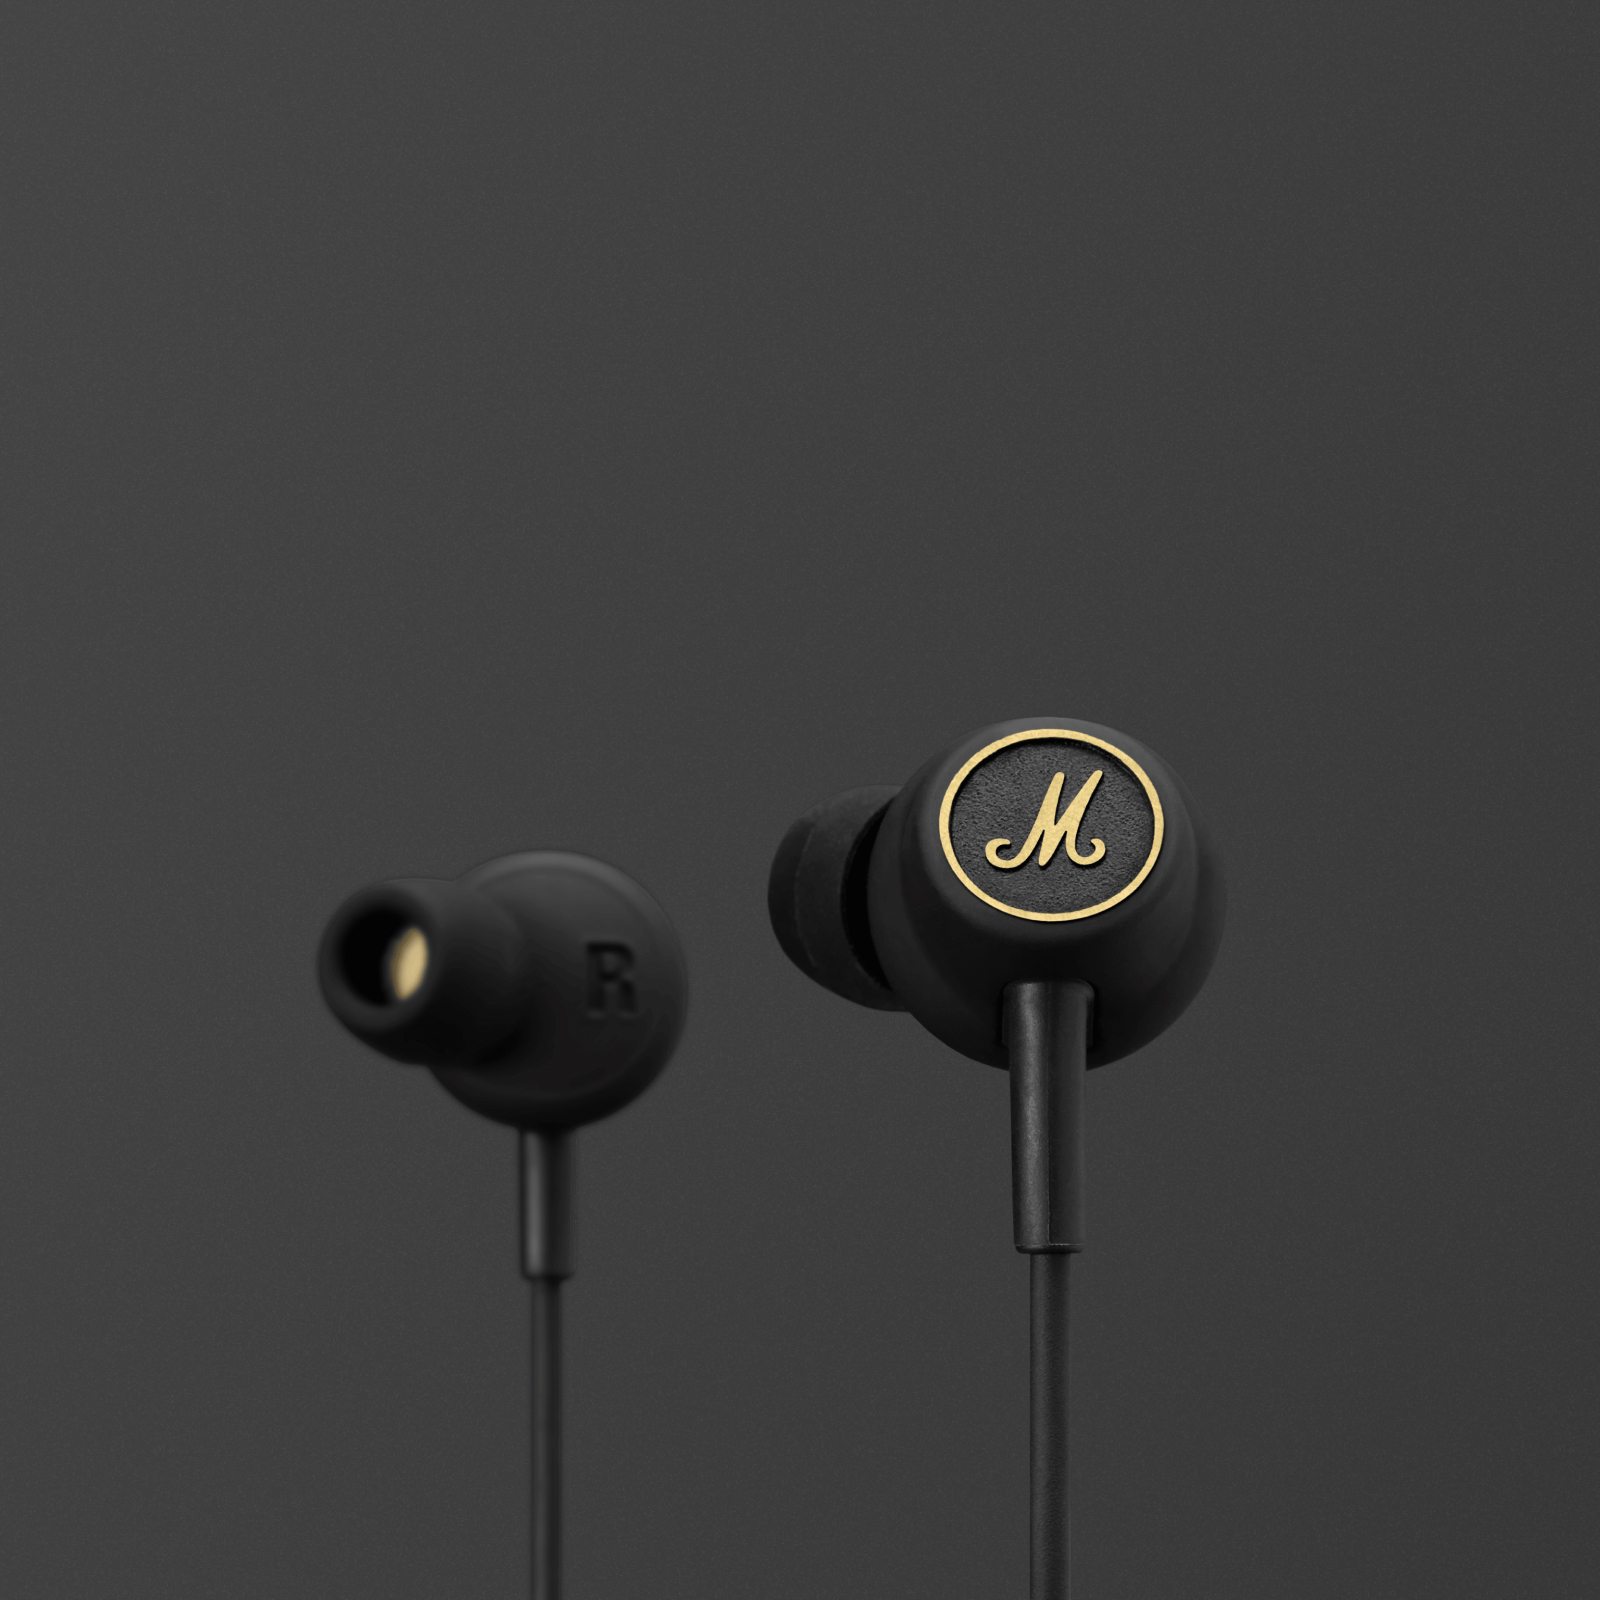 Ein Paar schwarze Marshall Mode EQ Kopfhörer mit goldenem Logo.